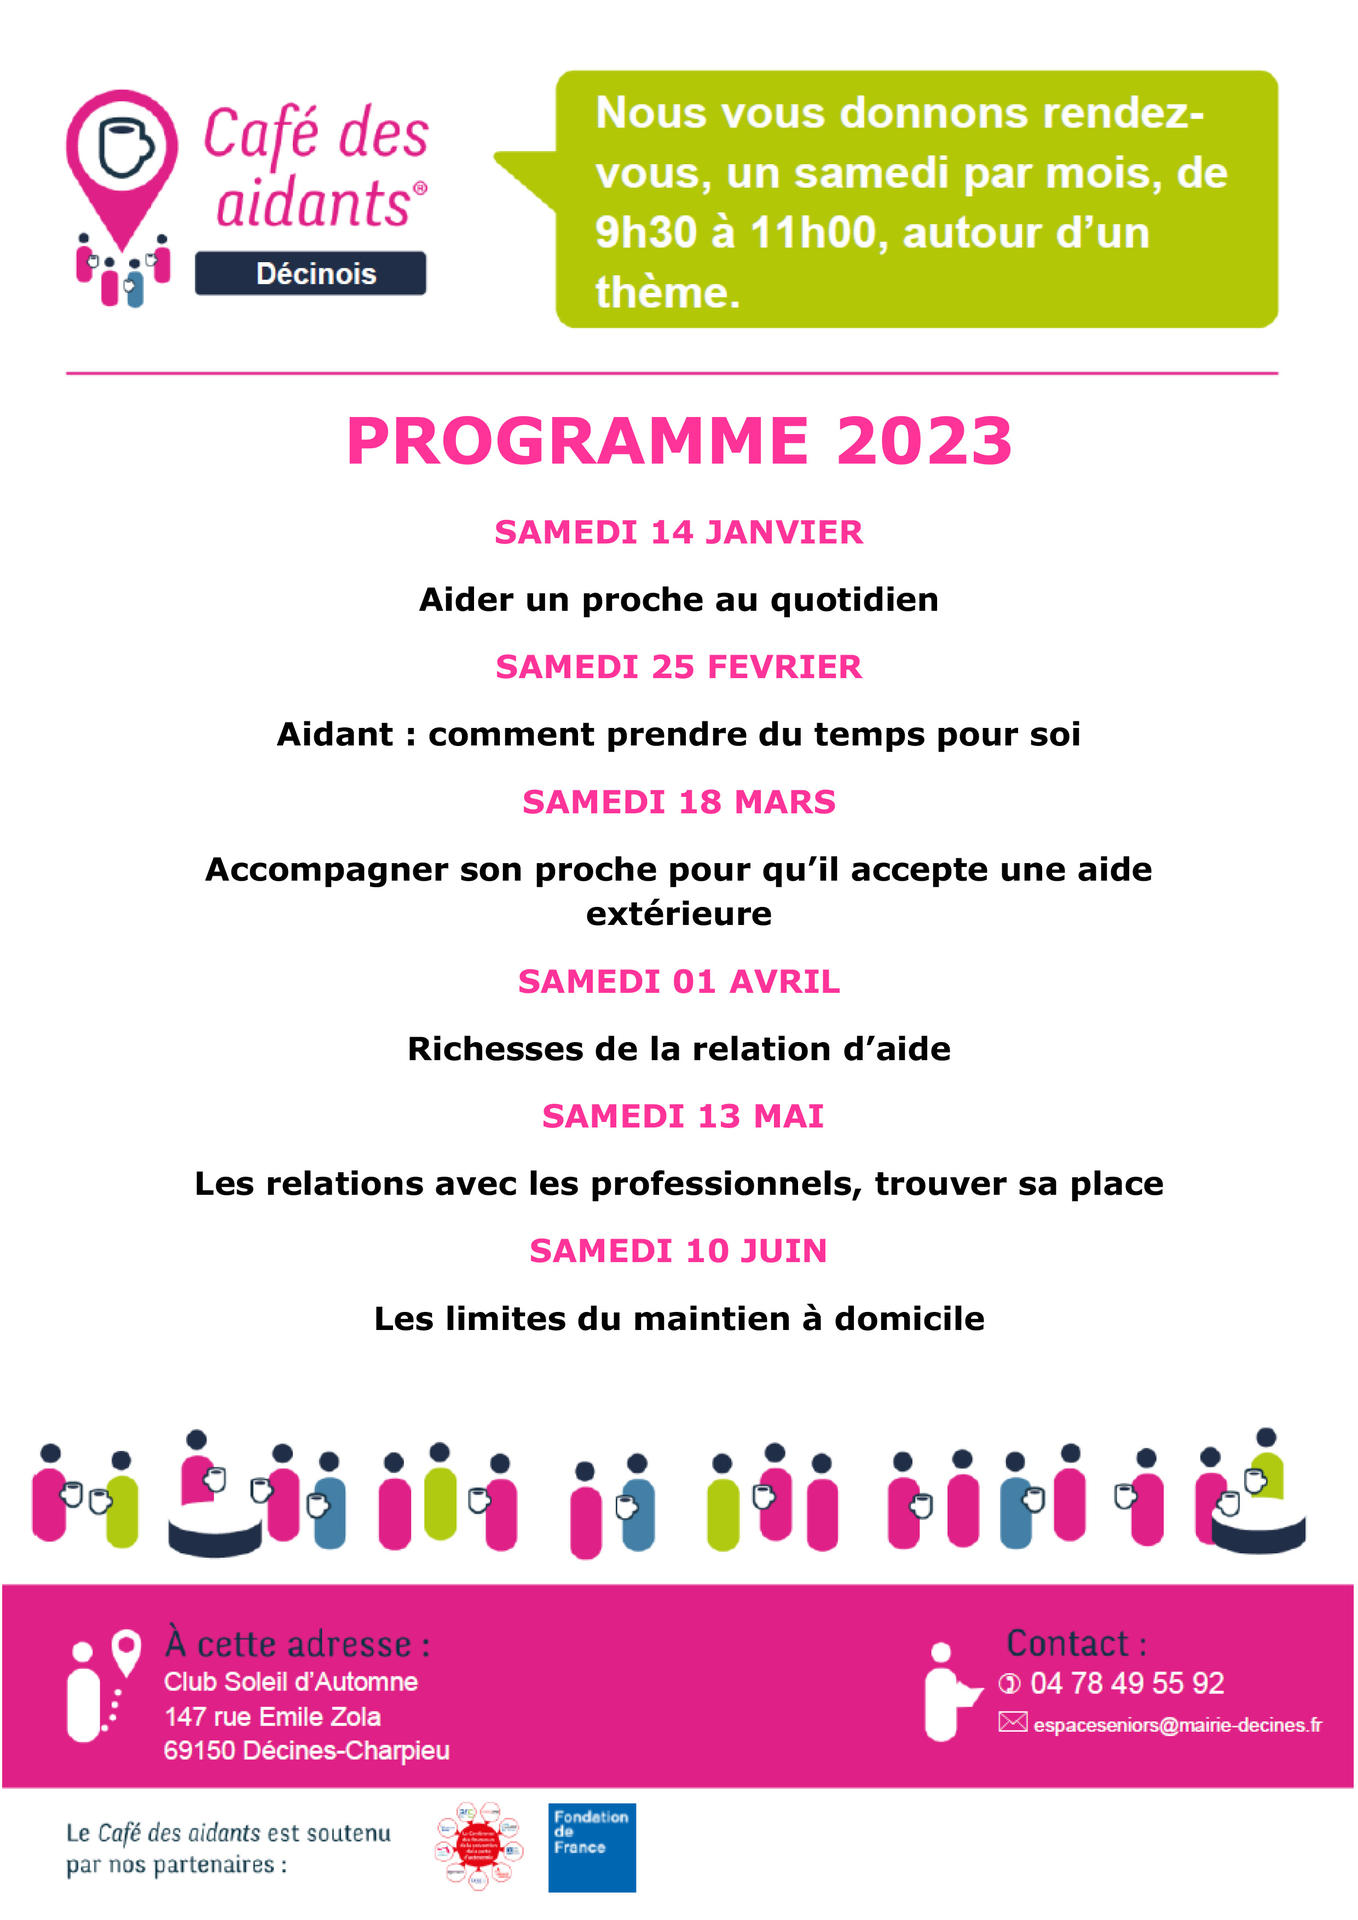 Café des aidants - Programme 2023